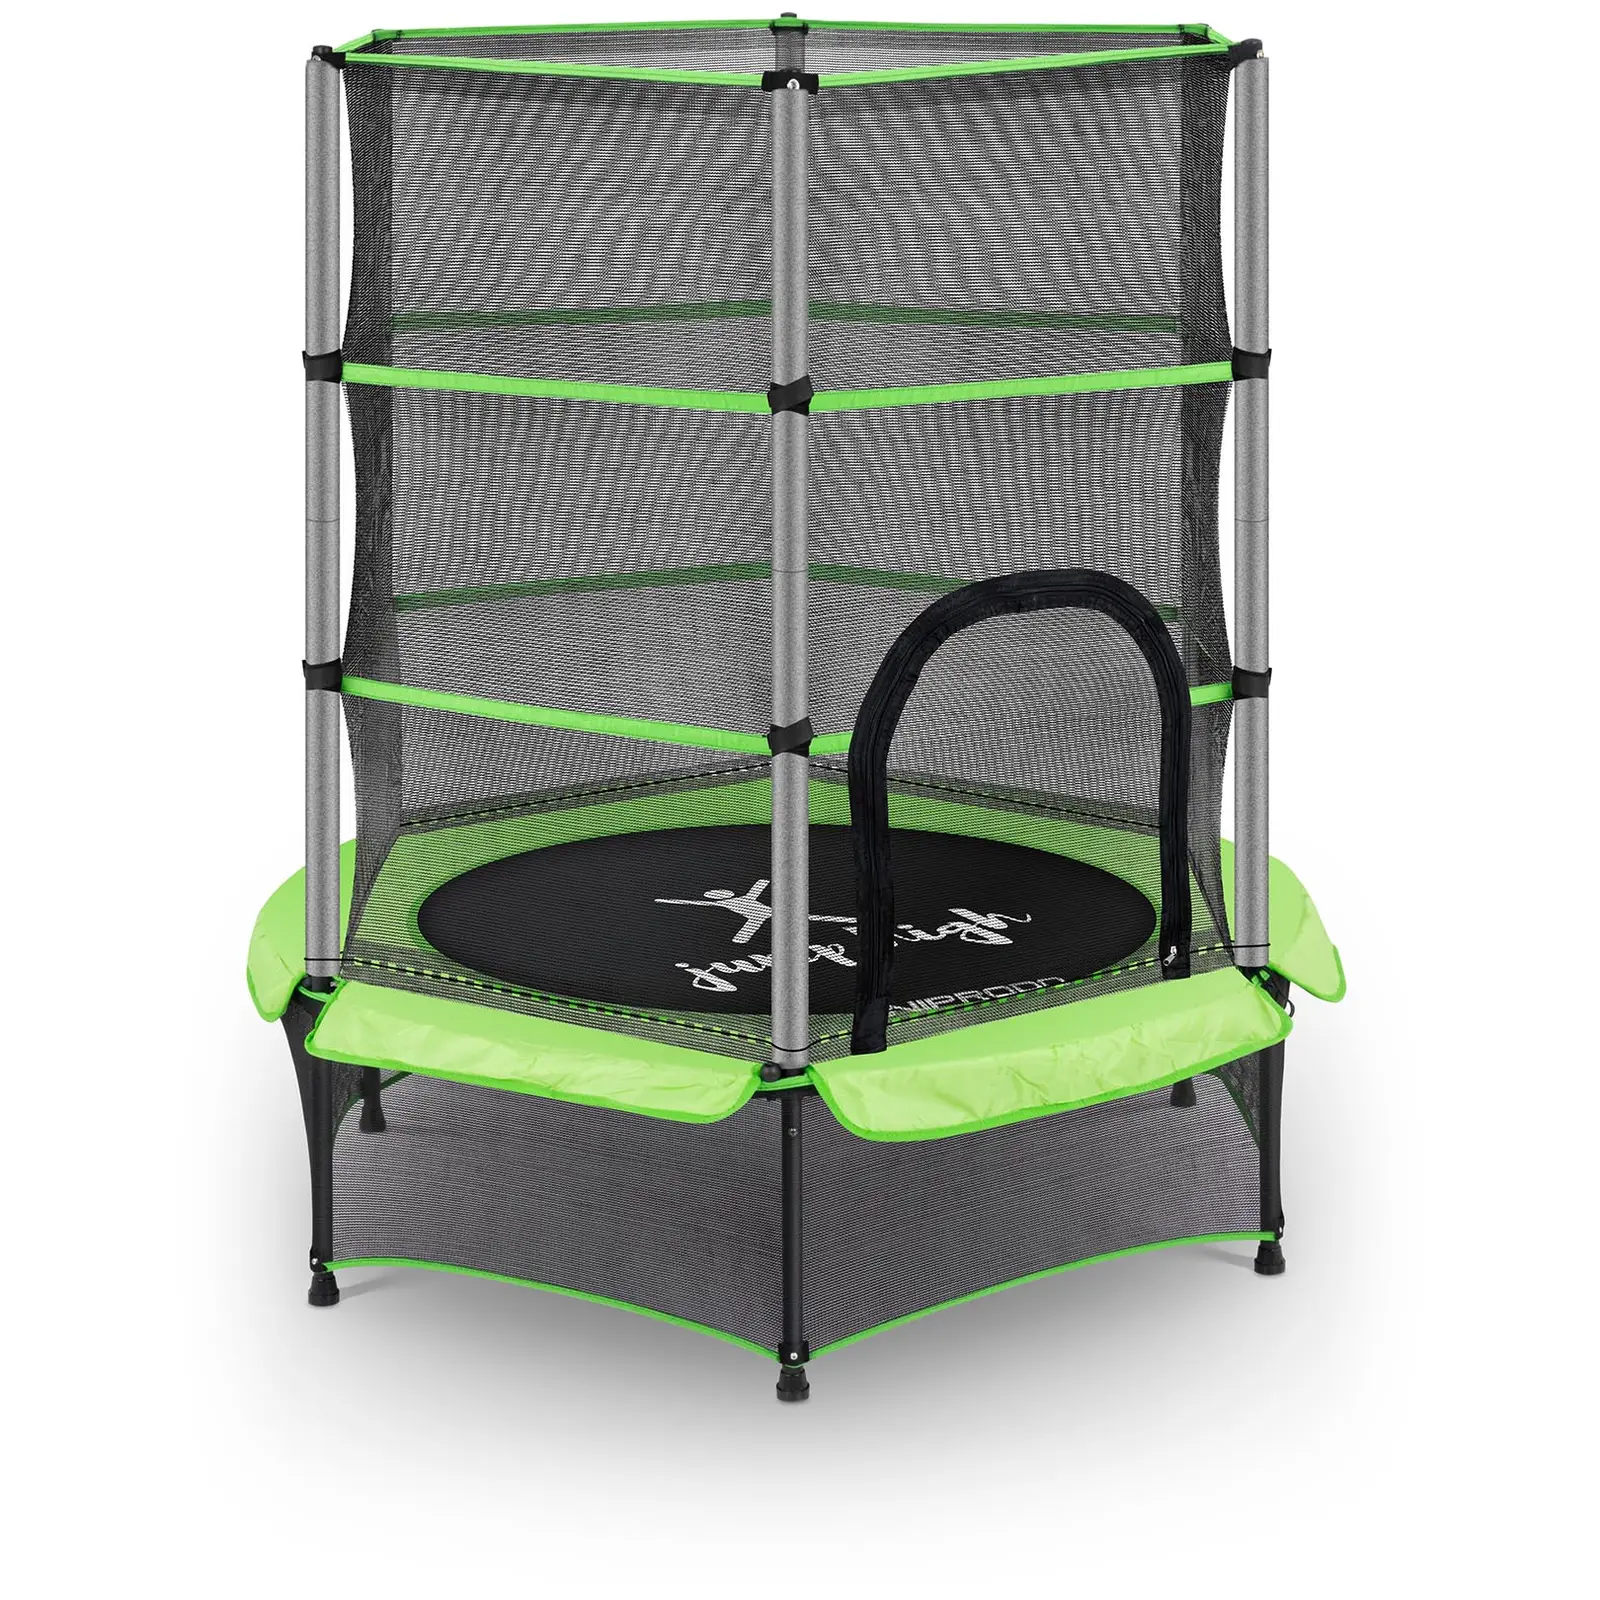 Studsmatta för barn - med säkerhetsnät - 140 cm - 50 kg - grön